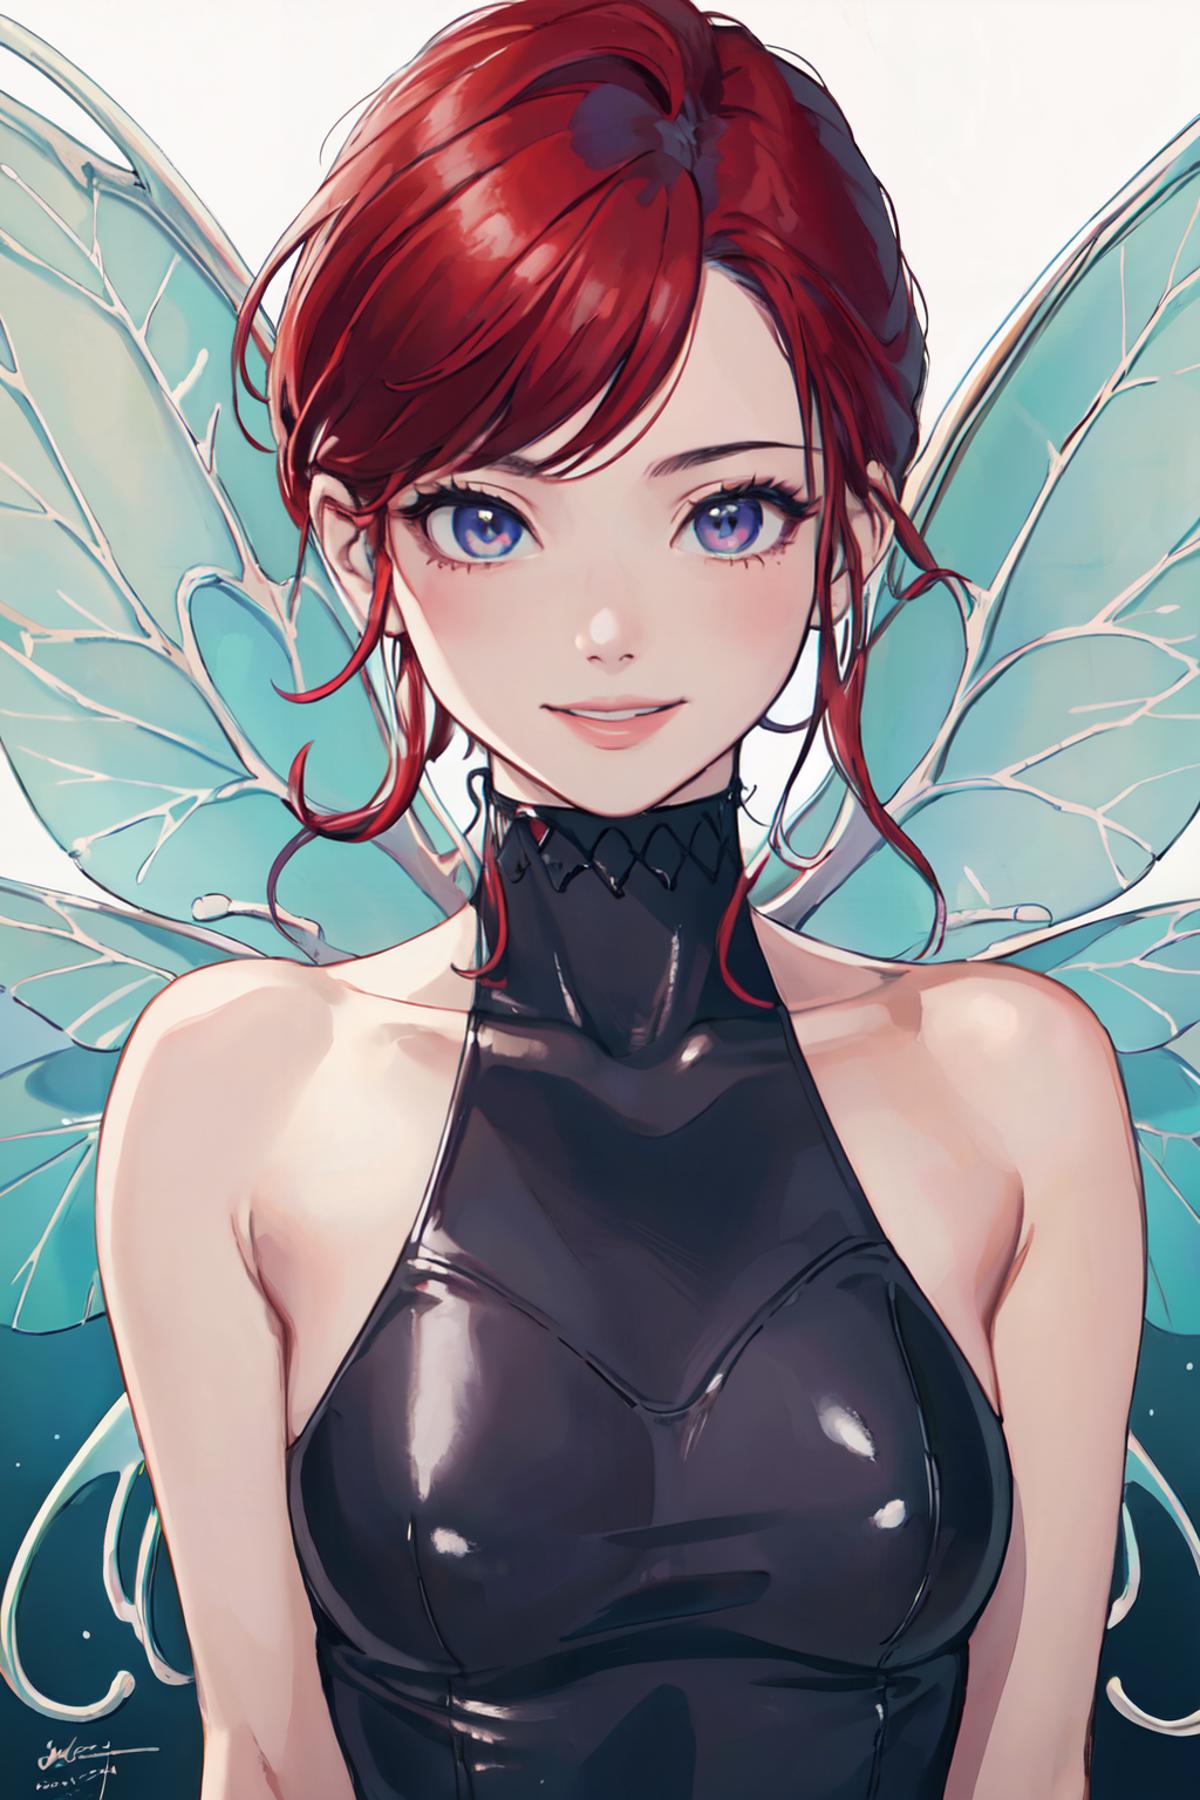 Fairy Pixie - Shin Megami Tensei image by kokurine